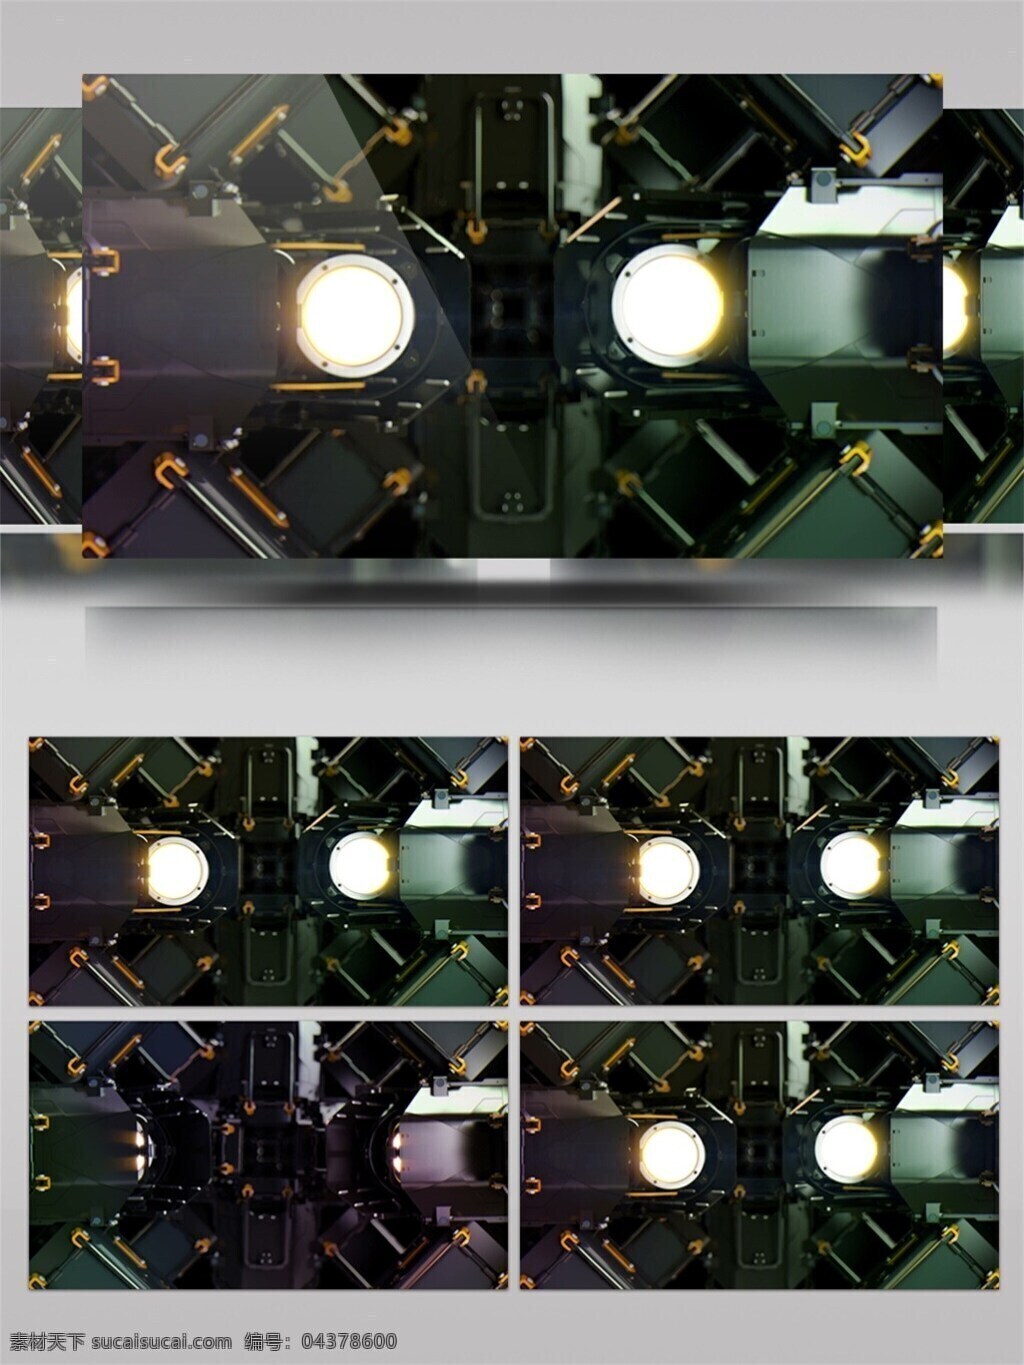 机器 部件 顺序 依次 转动 视频 灯光照明 机器部件 特写 3d 影视后期 视频素材 动态视频素材